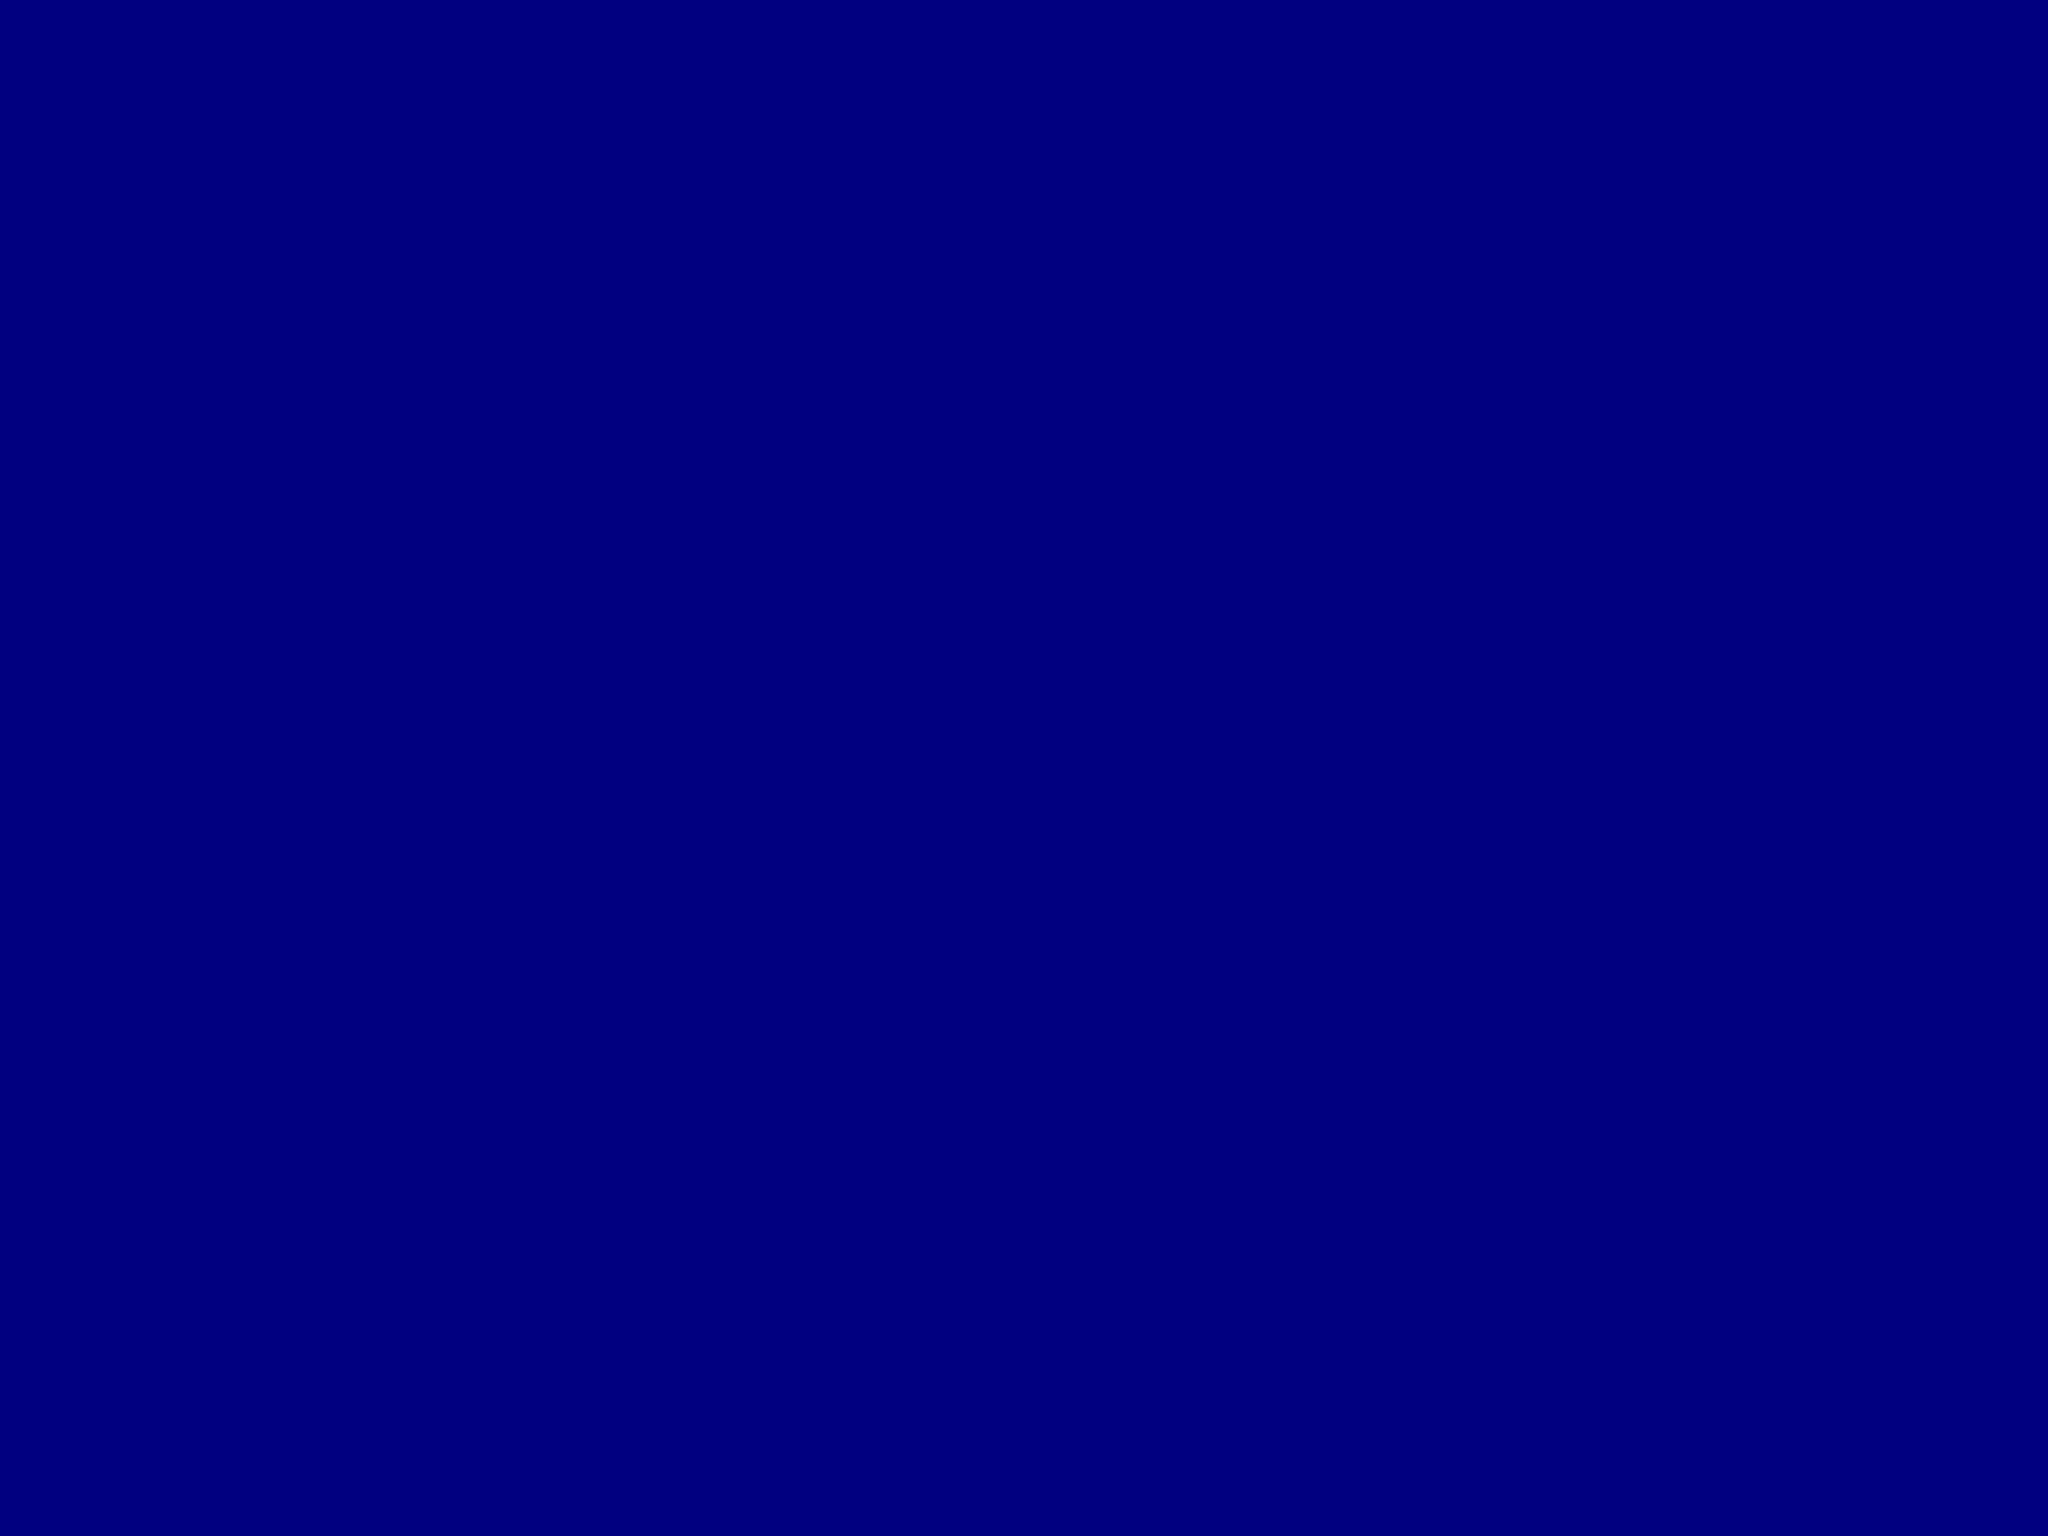 Khám phá nền màu xanh Navy đơn sắc kích thước 2048x1536 ngay hôm nay! Đây là một tùy chọn lý tưởng cho những người yêu thích sự đơn giản và tinh tế. Với không gian rộng lớn của nó, bạn sẽ có một bối cảnh hoàn hảo để thể hiện sự sáng tạo.